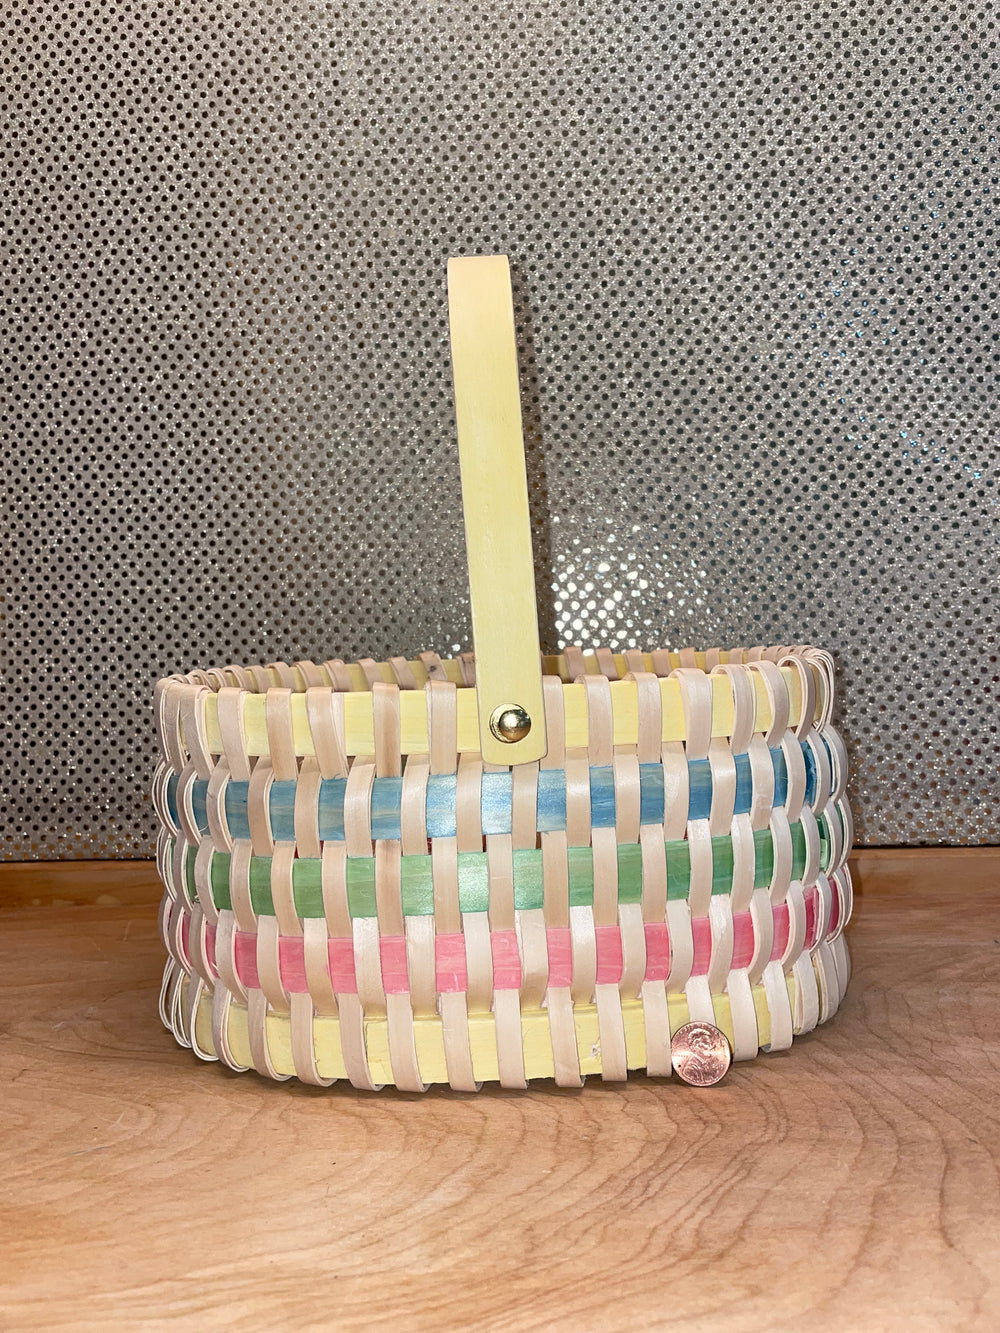 Oval Easter Basket w/Pastel Stripes